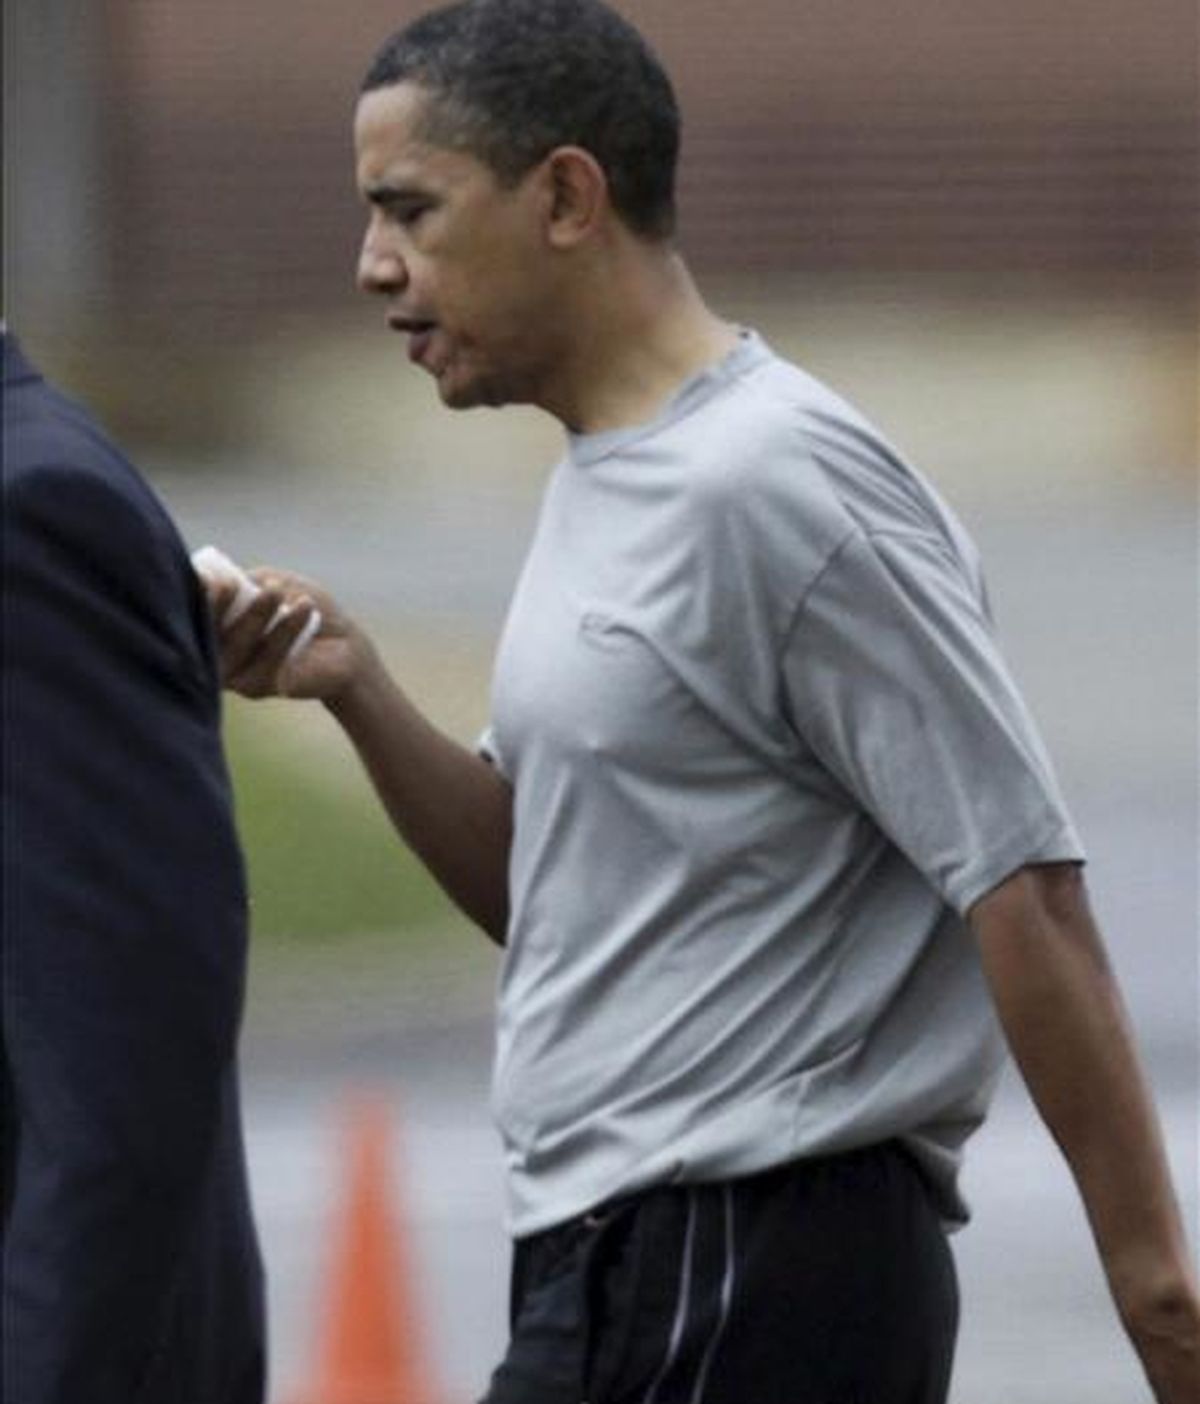 El presidente de Estados Unidos, Barack Obama, recibió 12 puntos de sutura como consecuencia de un golpe en el labio en un partido de baloncesto informal con un grupo de asesores y familiares, informó la Casa Blanca. EFE